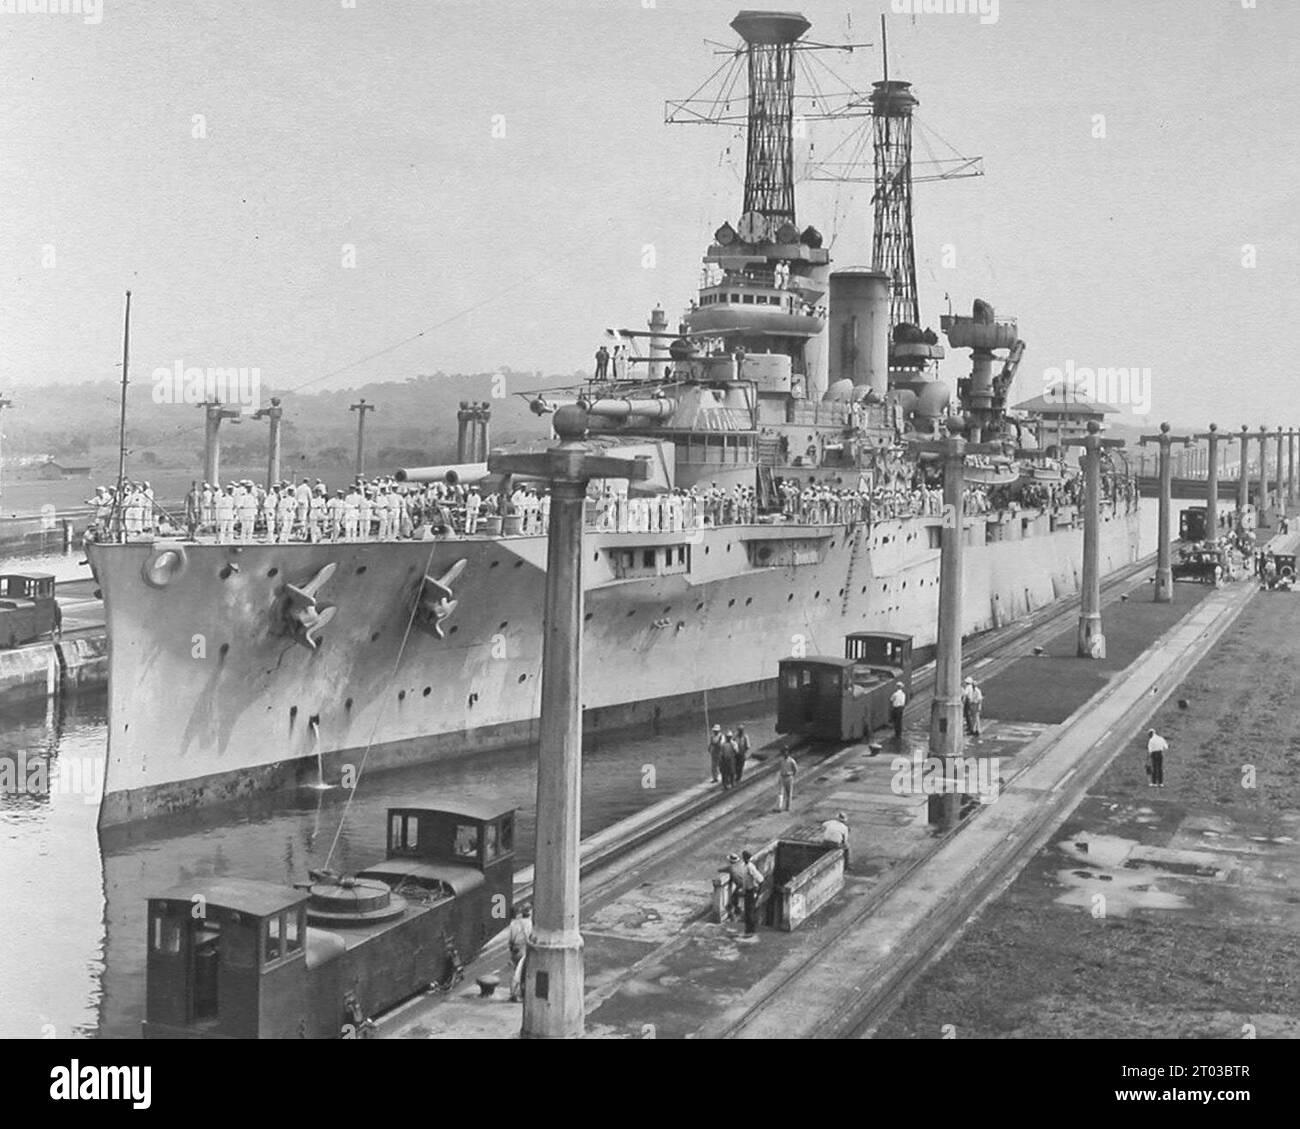 Pacific Fleet attraverso il Canale di Panama - USS Texas nella camera superiore orientale, Gatun Locks 25 luglio 1919 Foto Stock